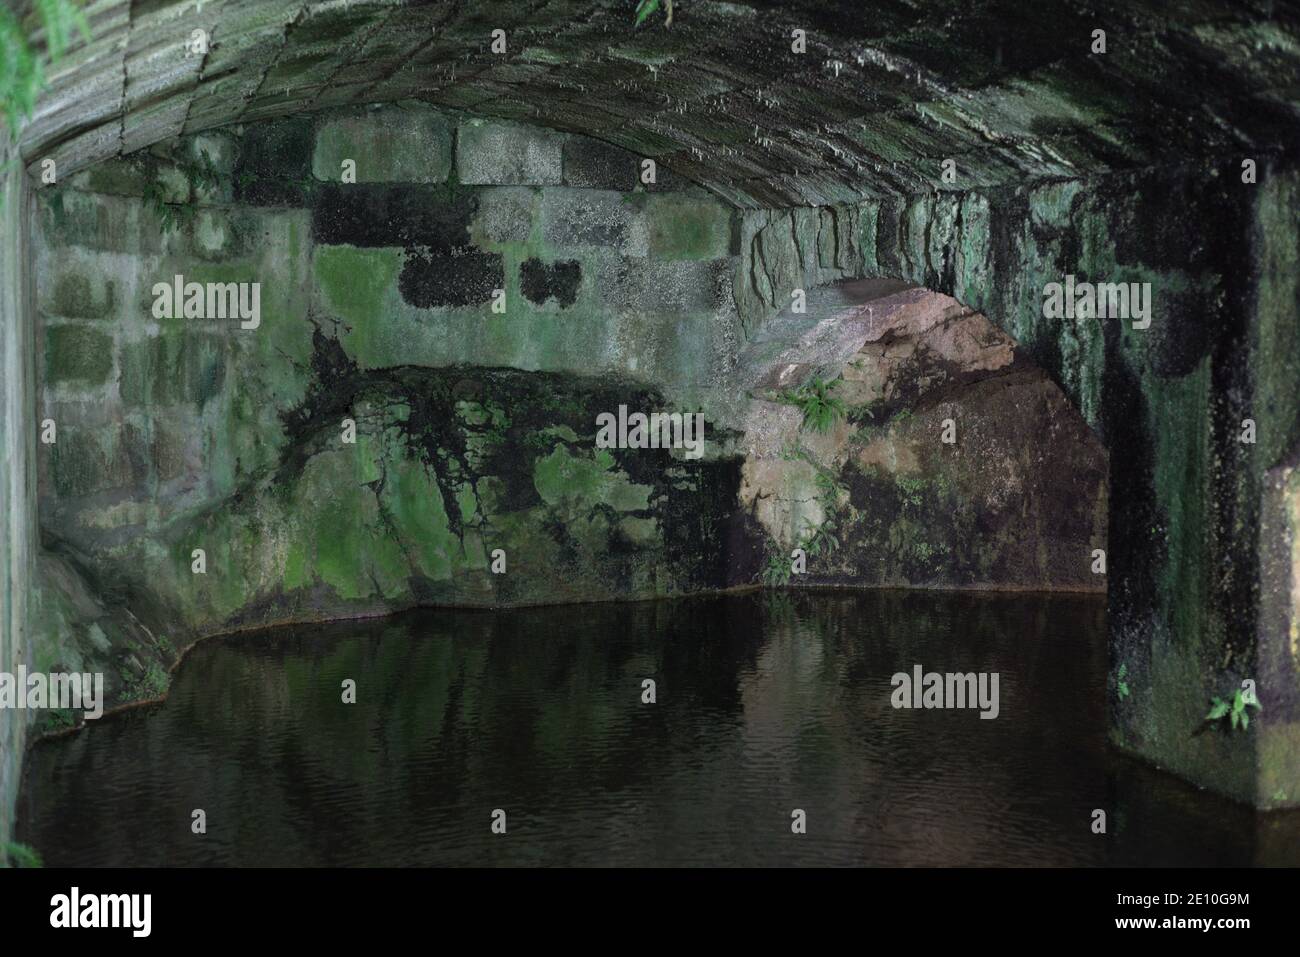 Spagna, Galizia, Coruña. Castello di San Anton (Museo Archeologico e di Storia). Cisterna sotterranea per raccogliere l'acqua piovana e rampa di accesso alla piattaforma alta. 18 ° secolo. Foto Stock